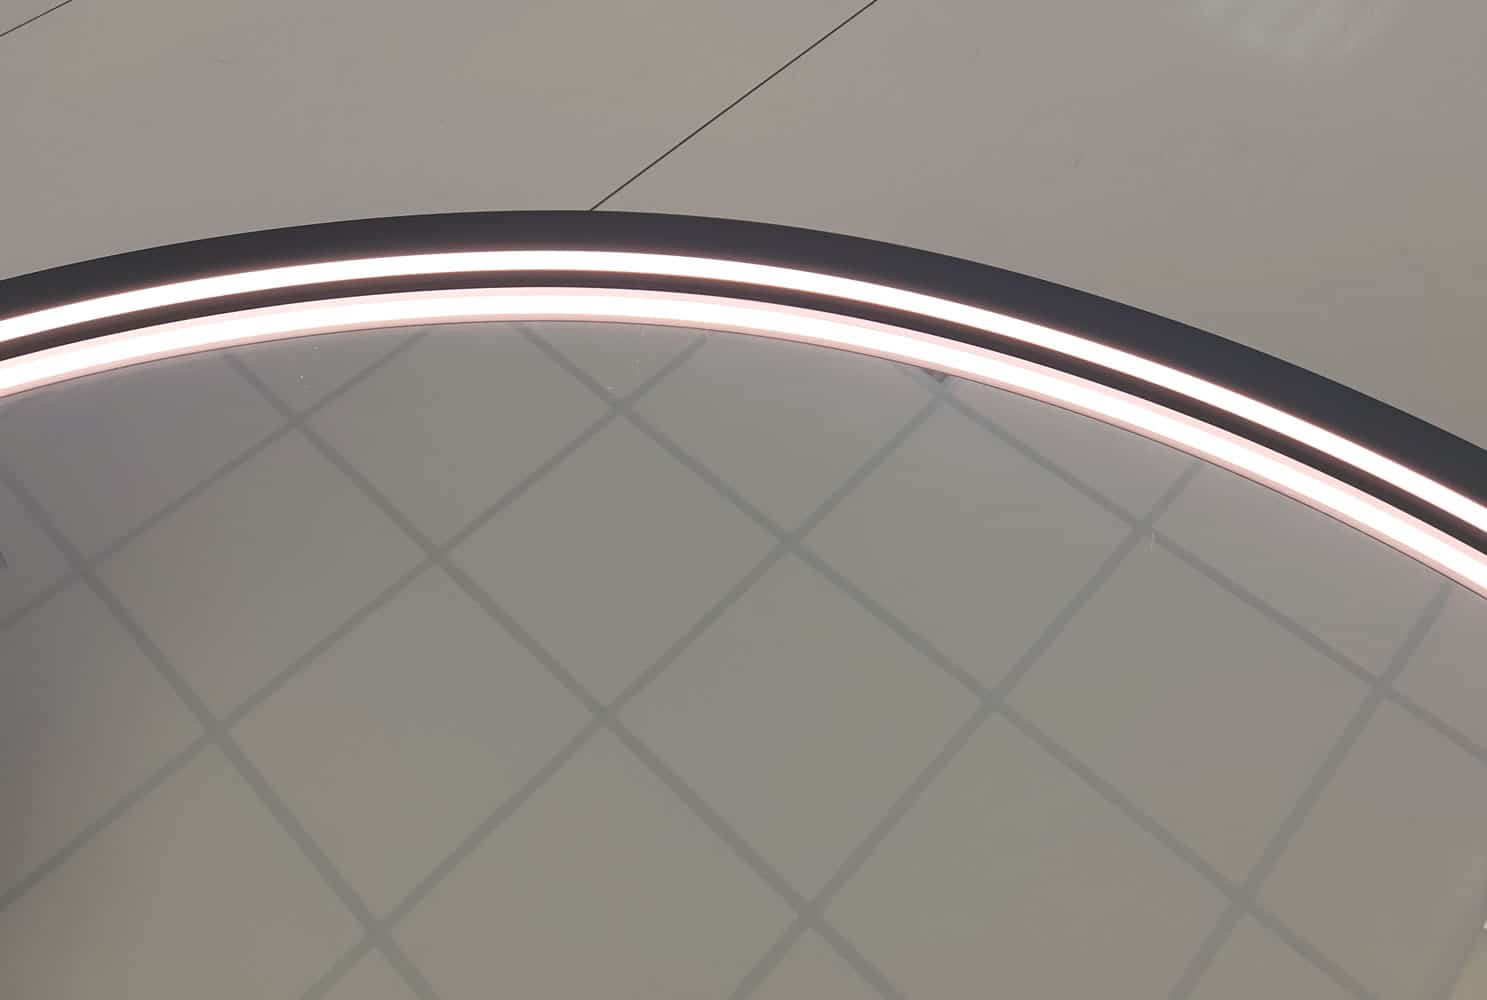 De dimbare LED verlichting is op fraaie wijze geïntegreerd aan de binnen zijde van het aluminium frame en geeft daardoor een praktisch licht in het gezicht.